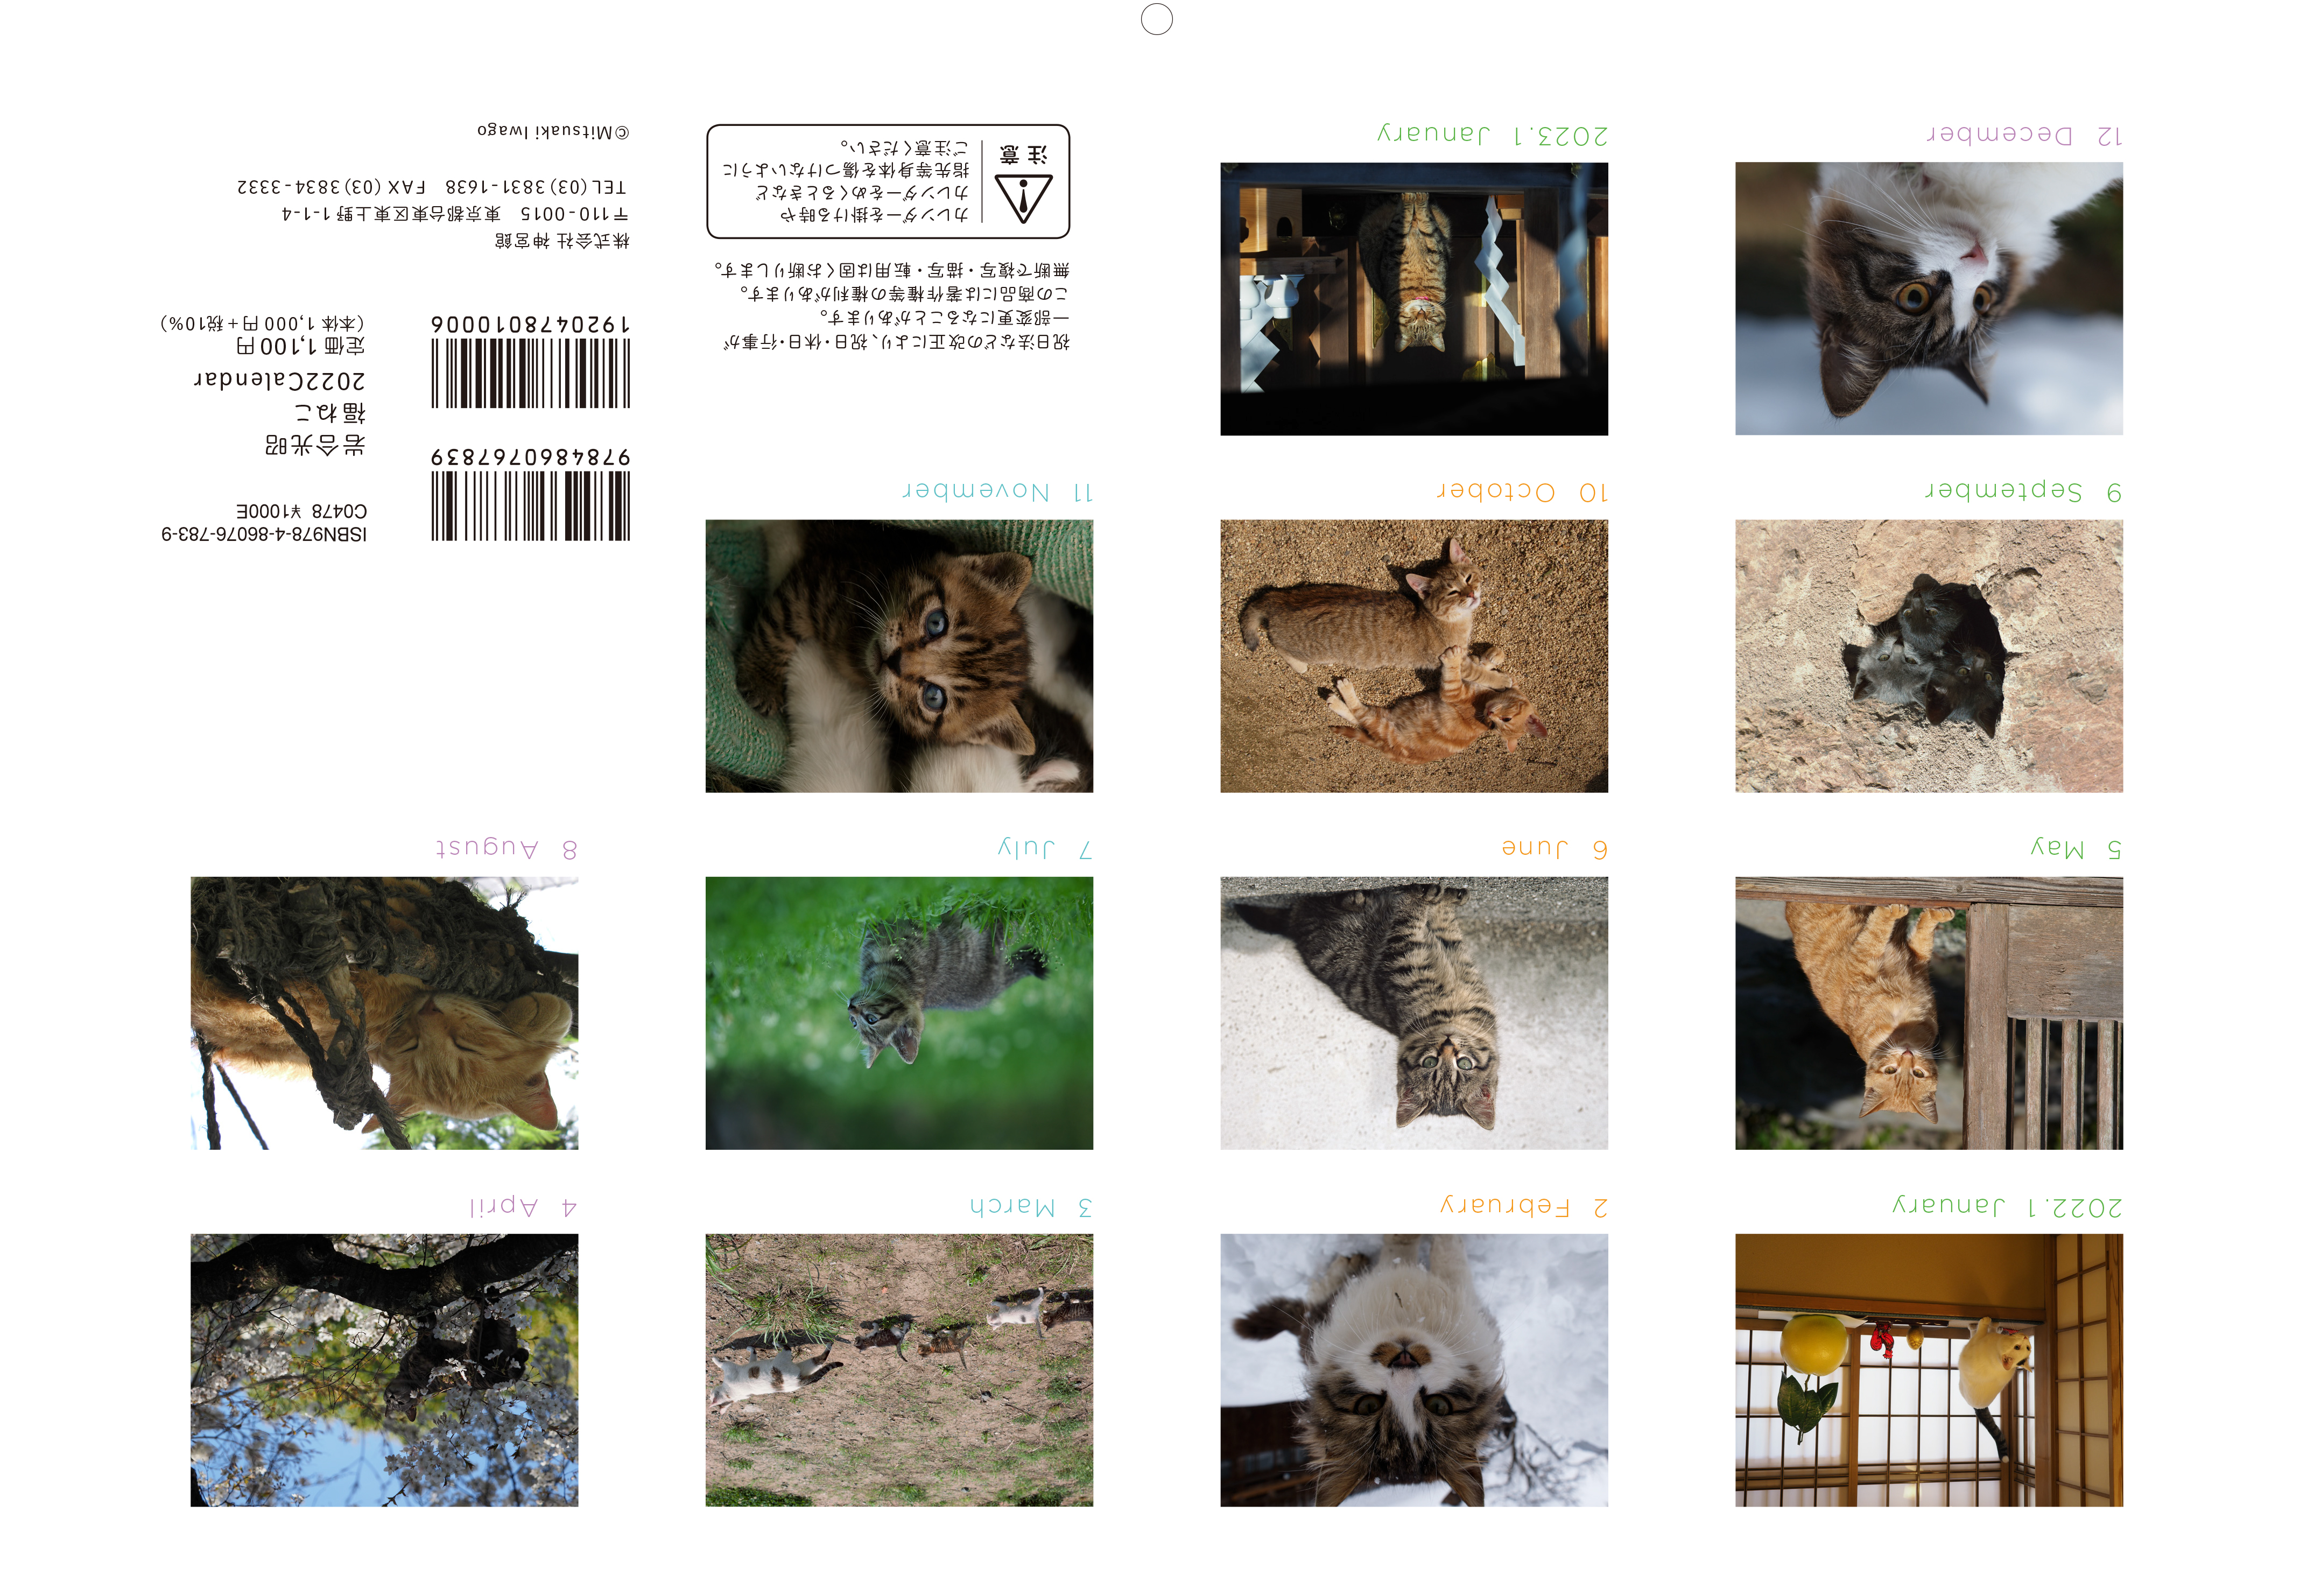 2022年も招くよ福をニャンニャンと、岩合さんの猫写真カレンダー